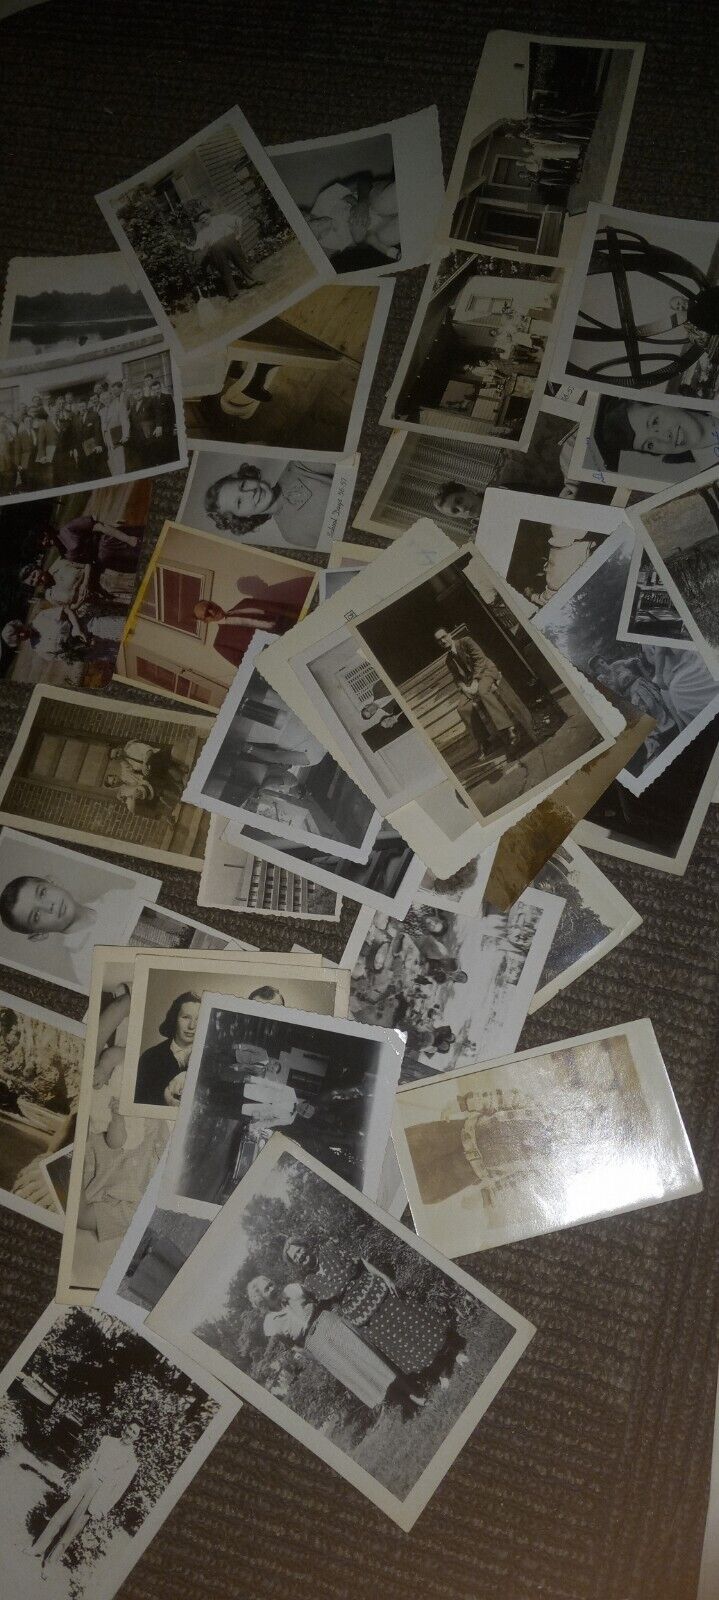 INCREDIBLE Antique Early 1900s Family Photo Album, Photo Scrapbook Loose Photos